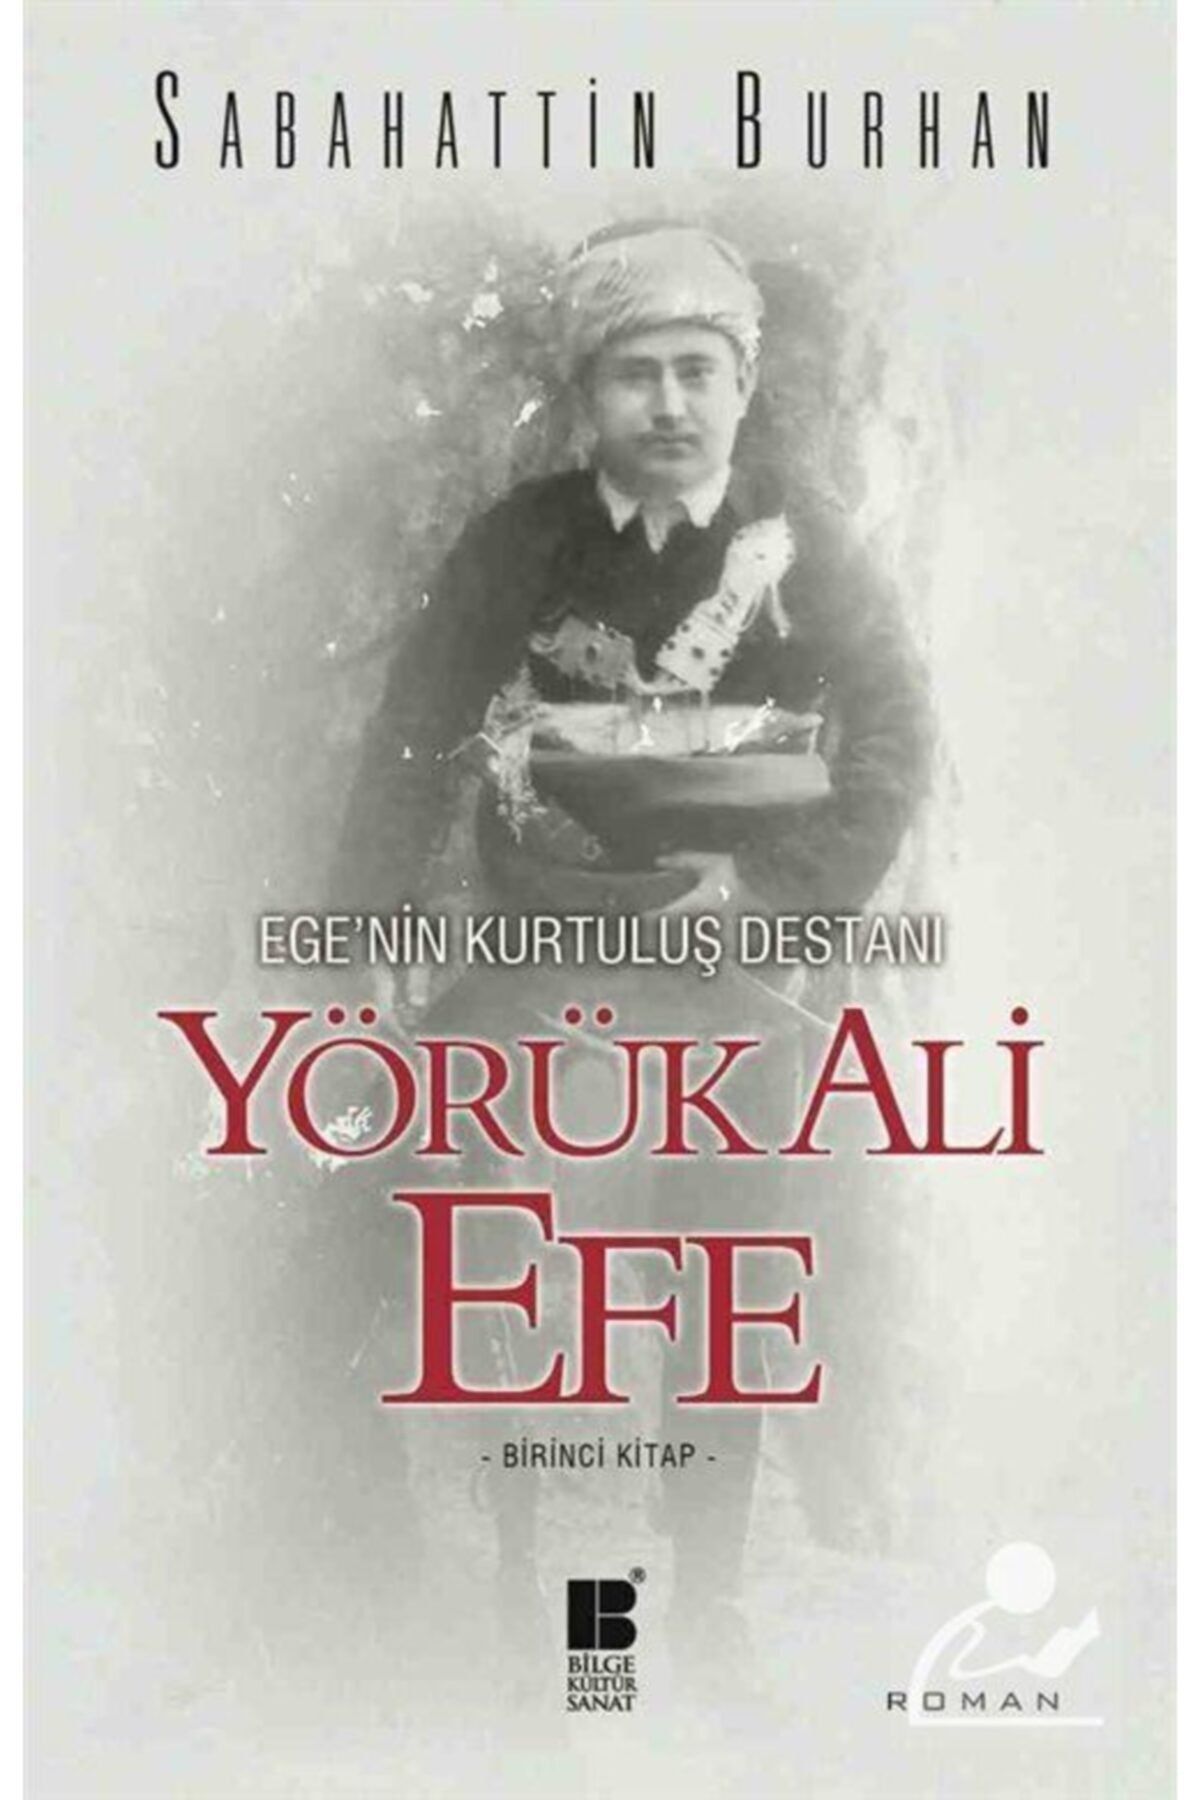 Bilge Kültür Sanat Yörük Ali Efe - Ege'nin Kurtuluş Destanı (birinci Kitap)